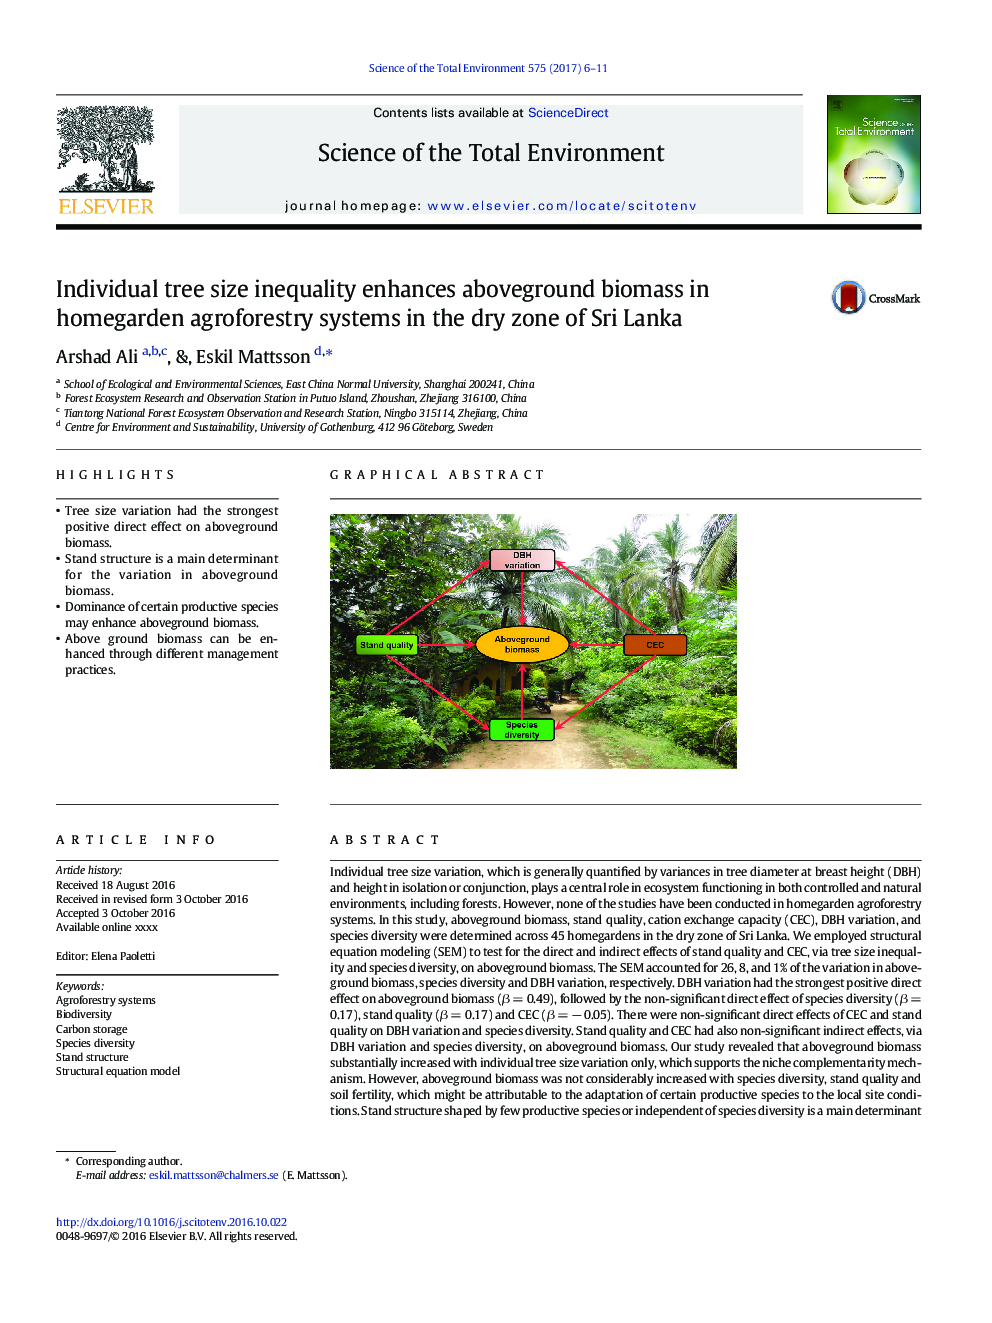 نابرابری اندازه های درخت فردی باعث افزایش زیست توده زمین در سیستم های جنگلی کشاورزی خانه در خشکی منطقه سریلانکا